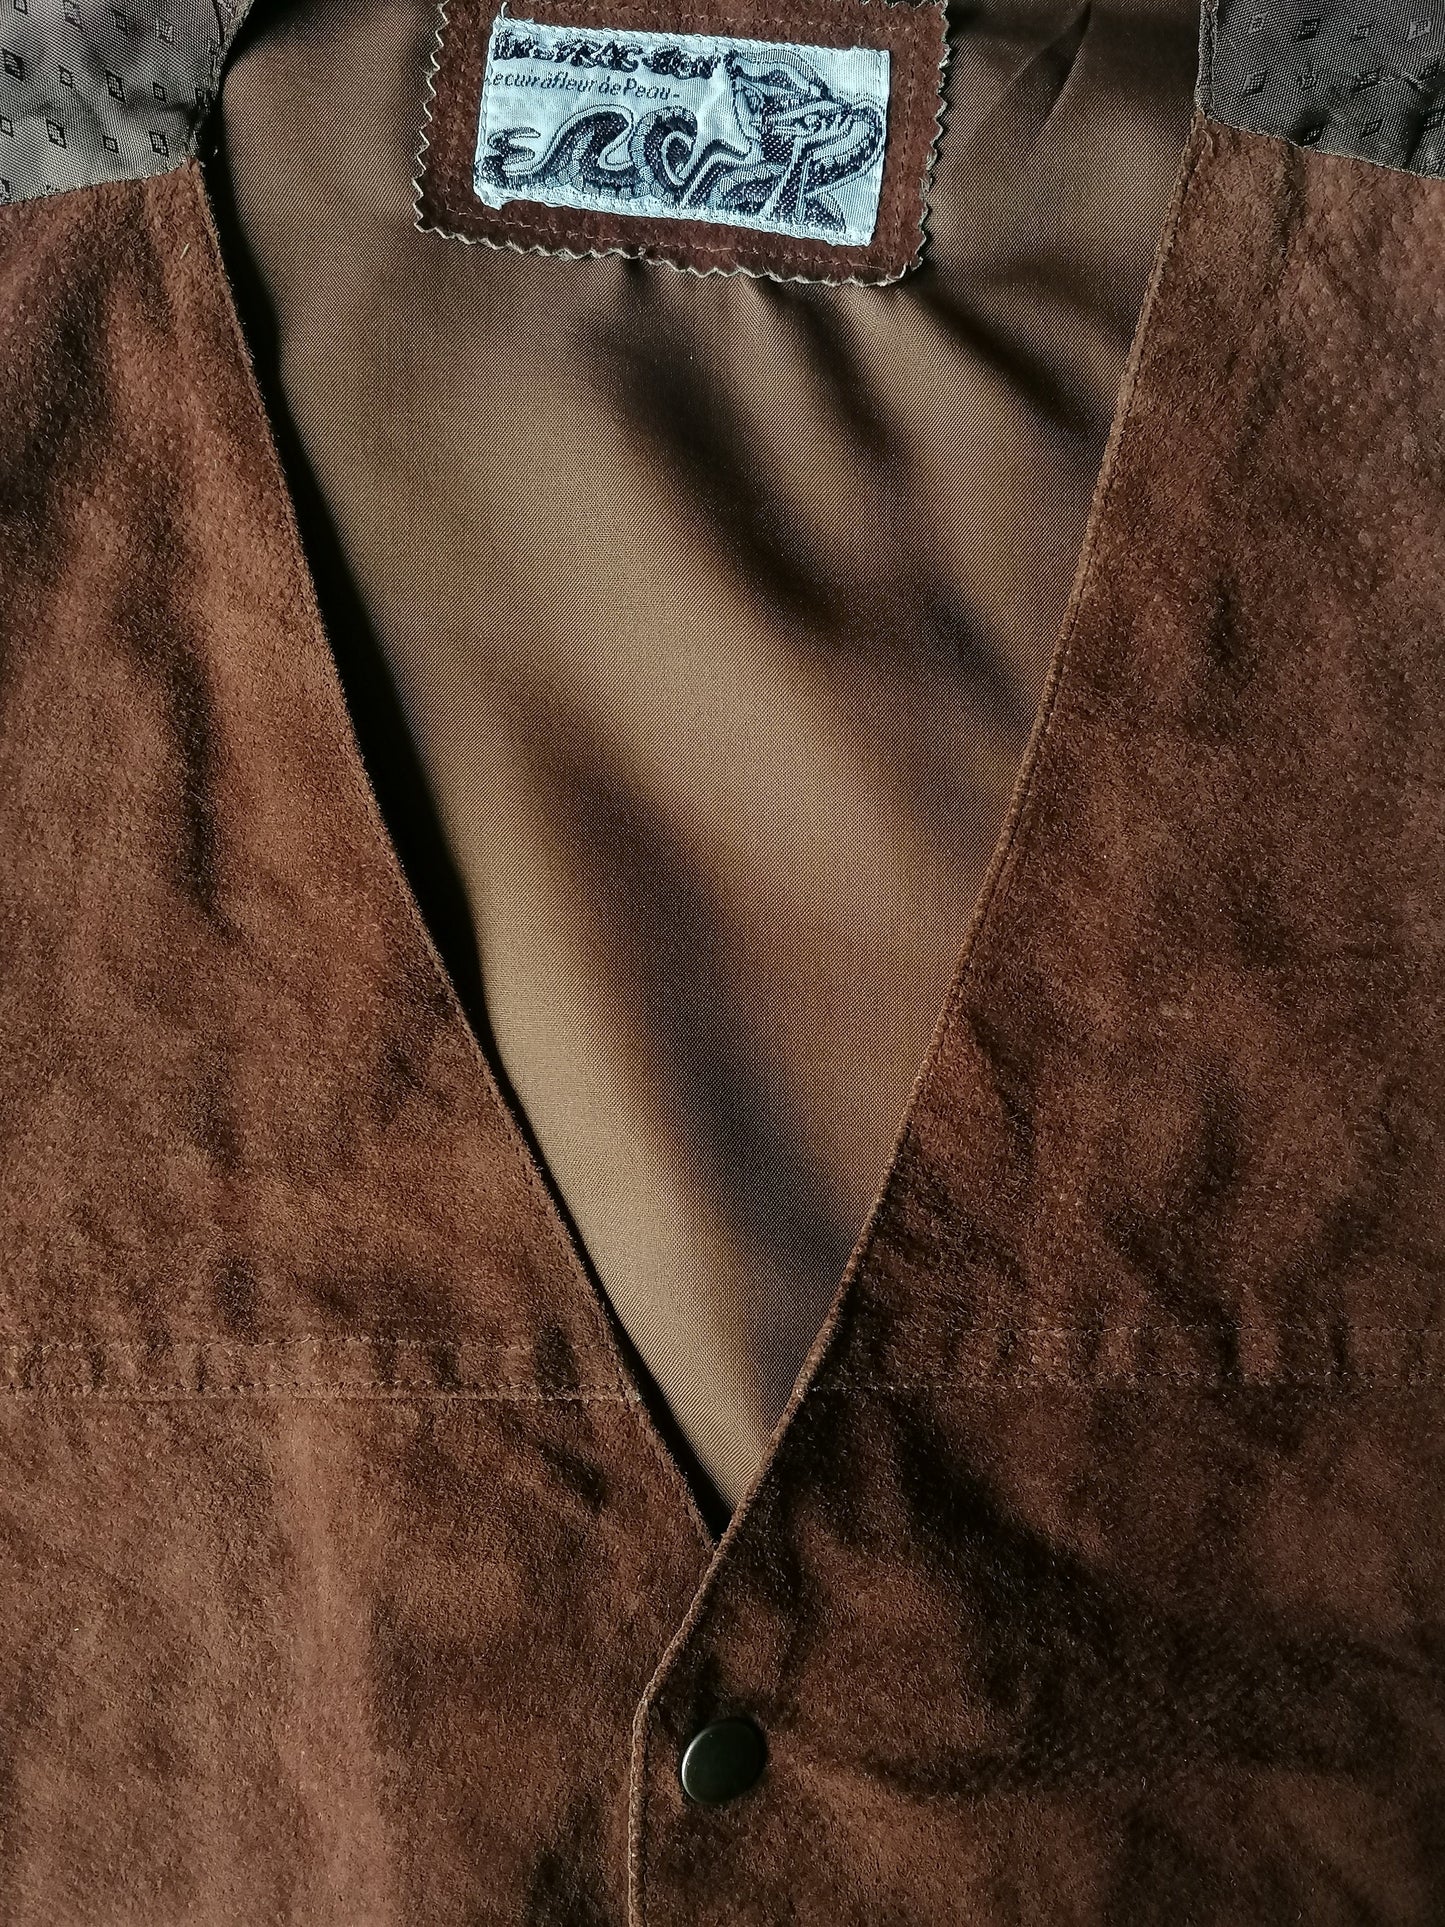 Wiistcoat in pelle in-frac-tigs con borchie. Colorato marrone. Taglia M.